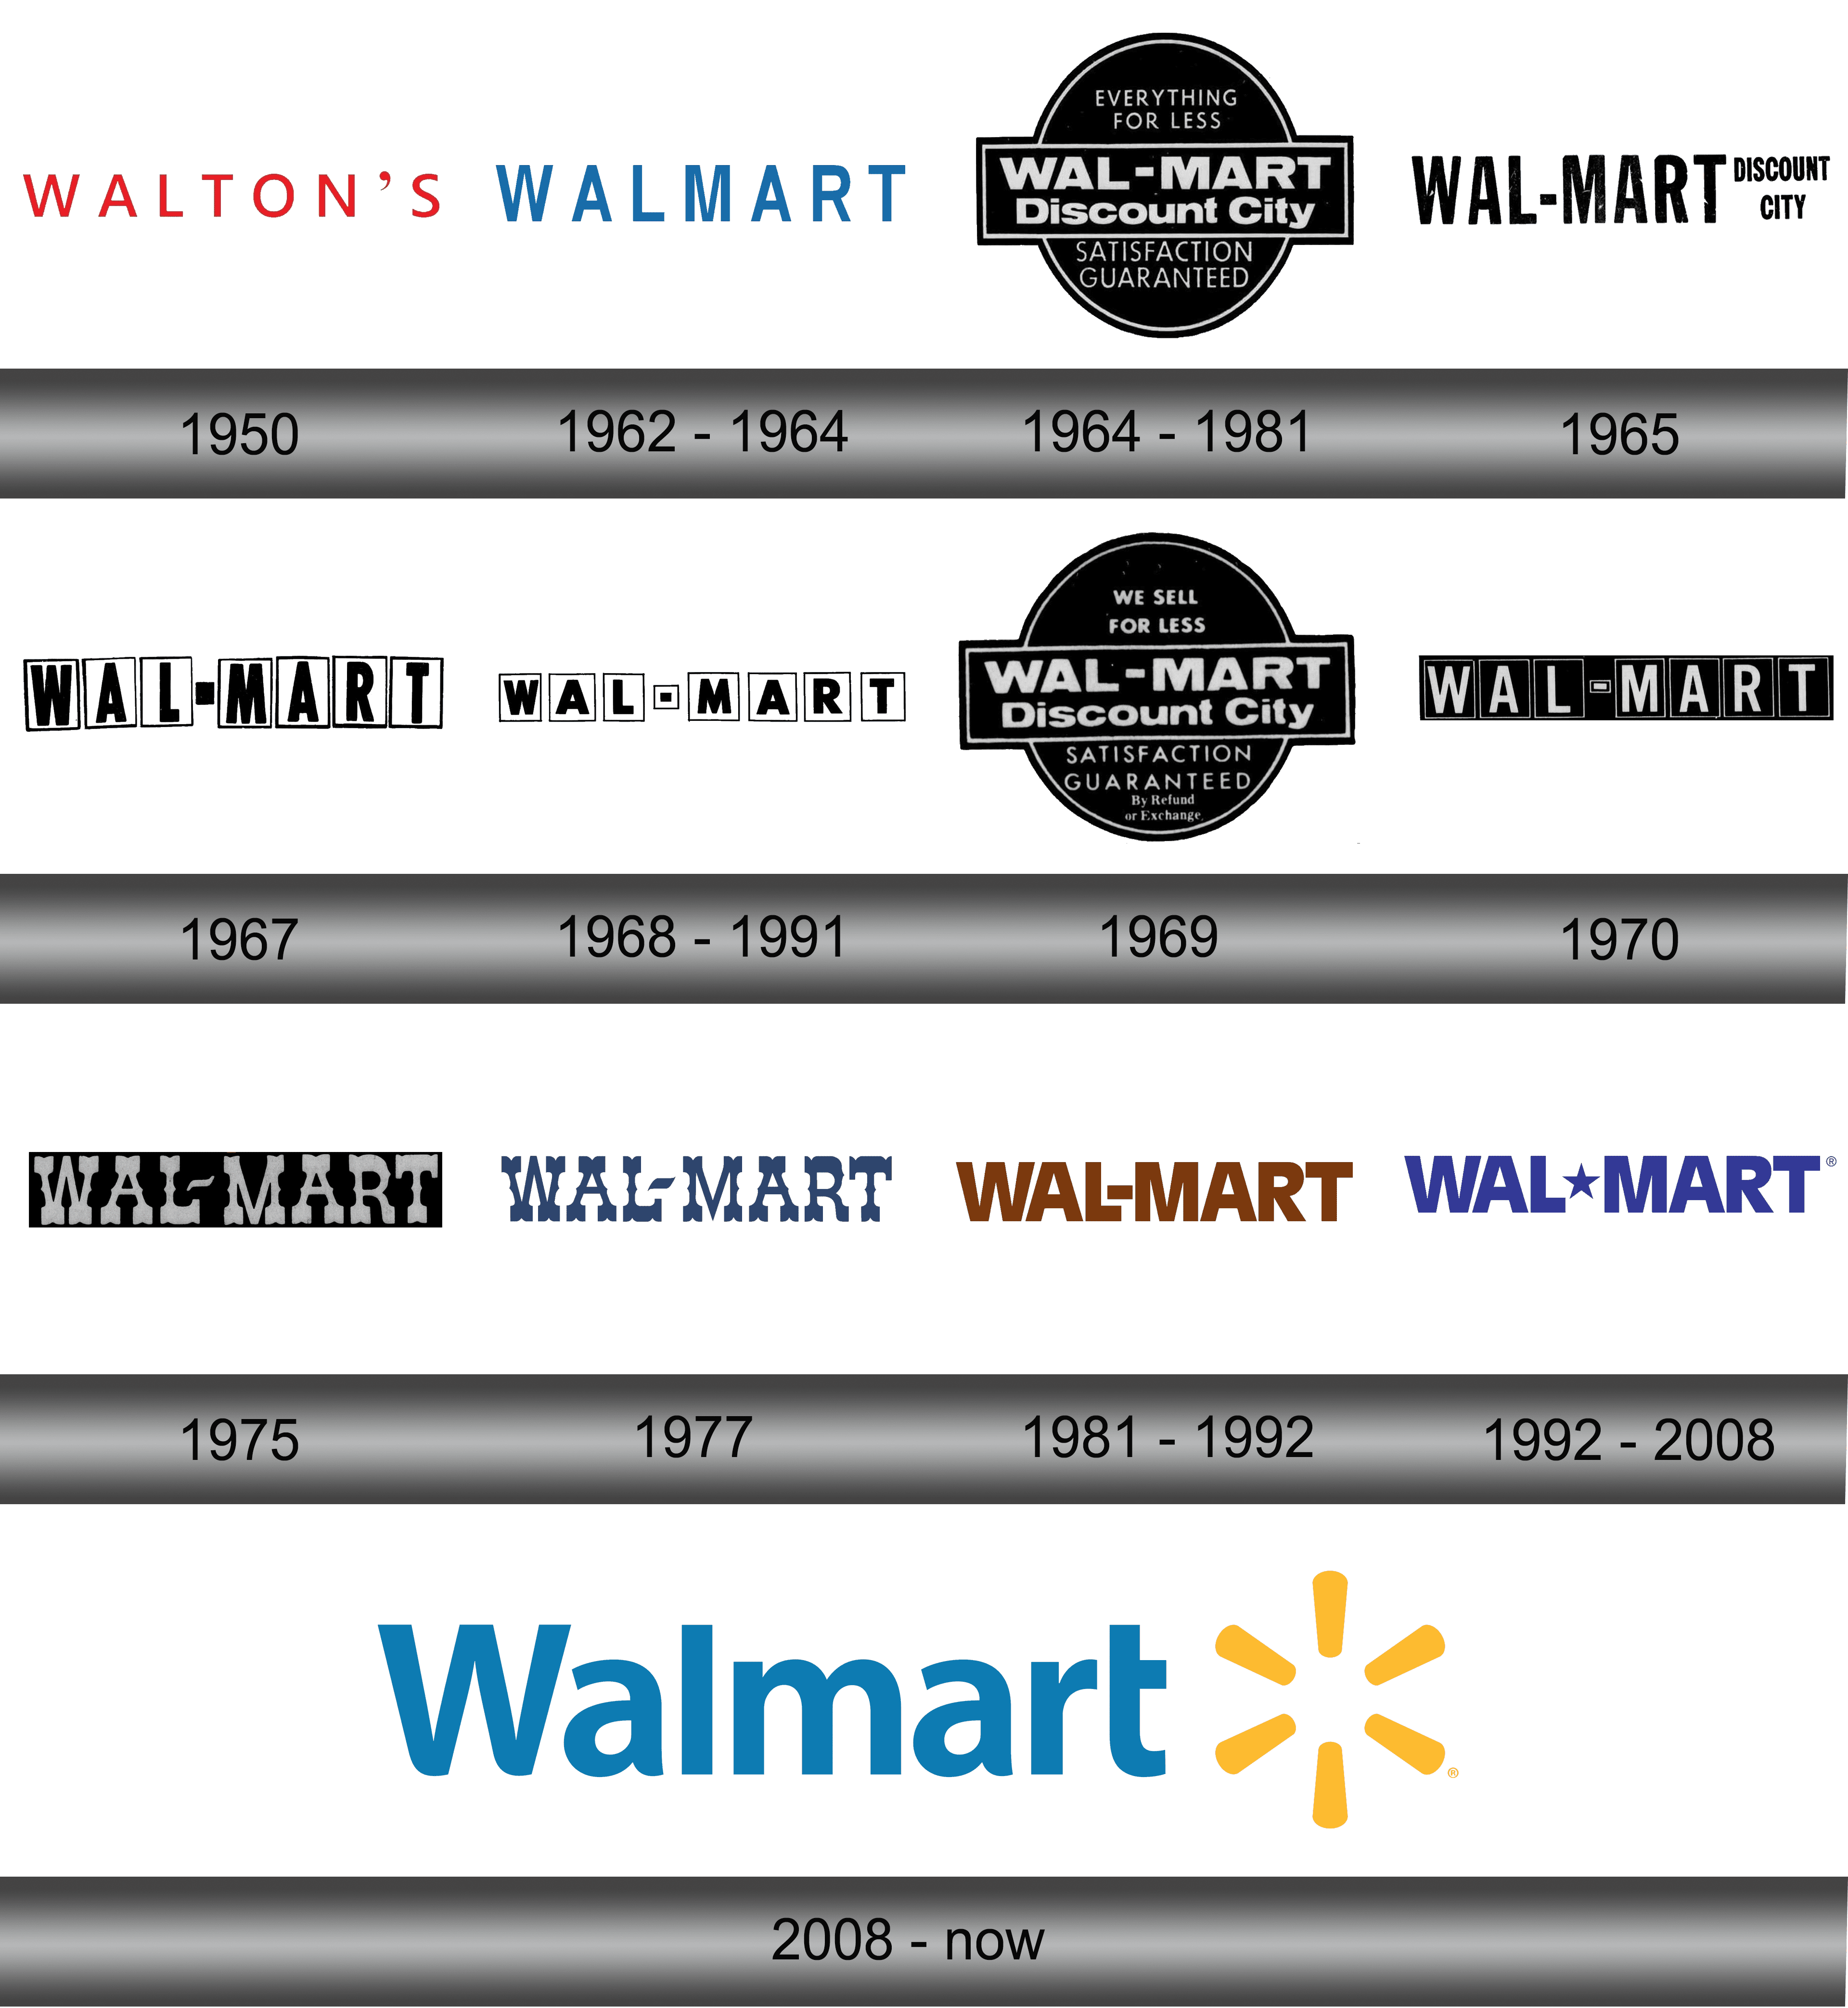 WalMart+ vs. Amazon Prime: Who Will Be the Winner? - Lessgistics